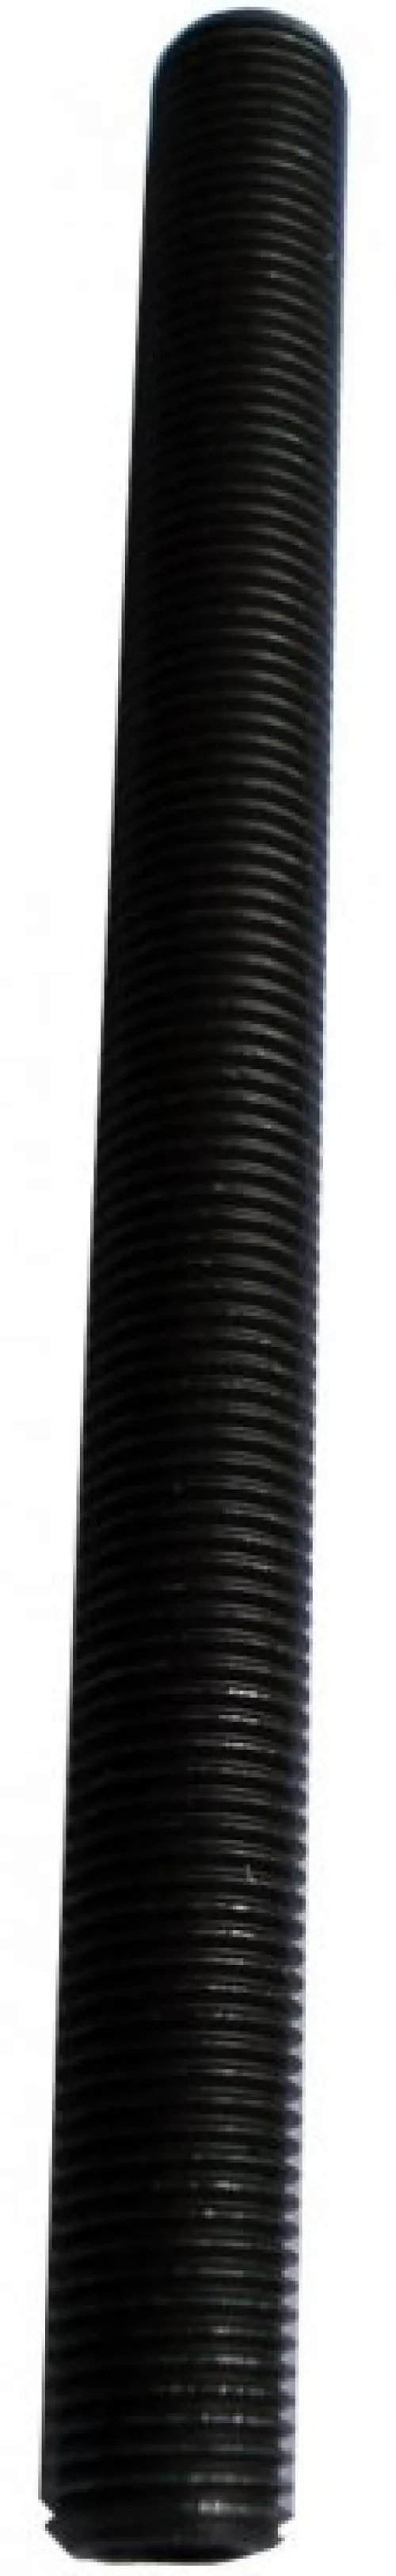 Вісь передньої втулки Shimano HB-RM60, 108мм (4-4/4), пола